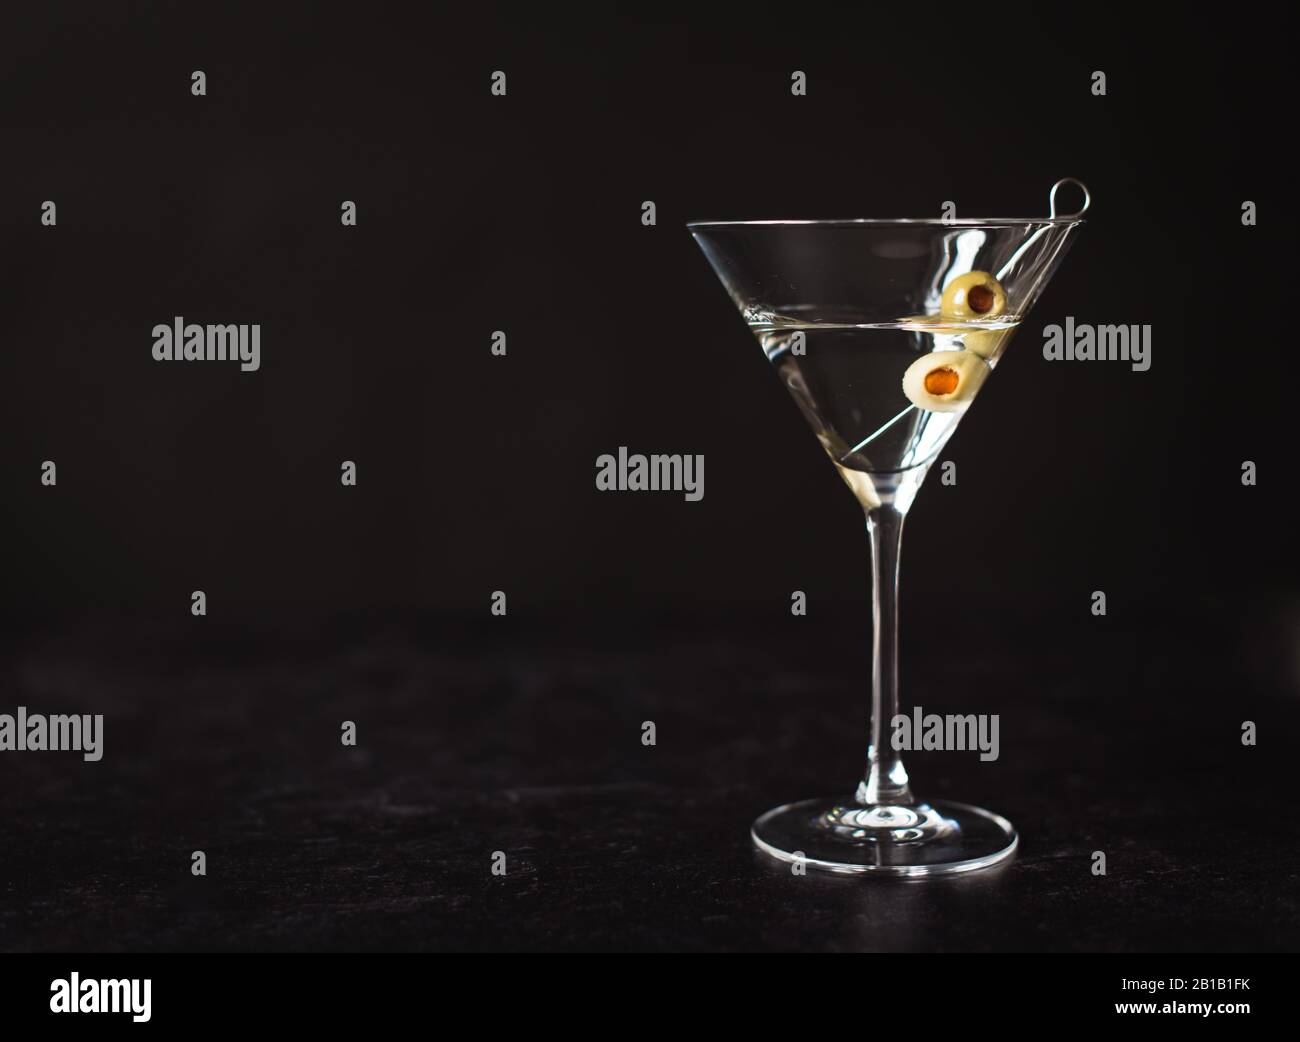 Gros plan sur un cocktail martini classique sur fond noir. Banque D'Images